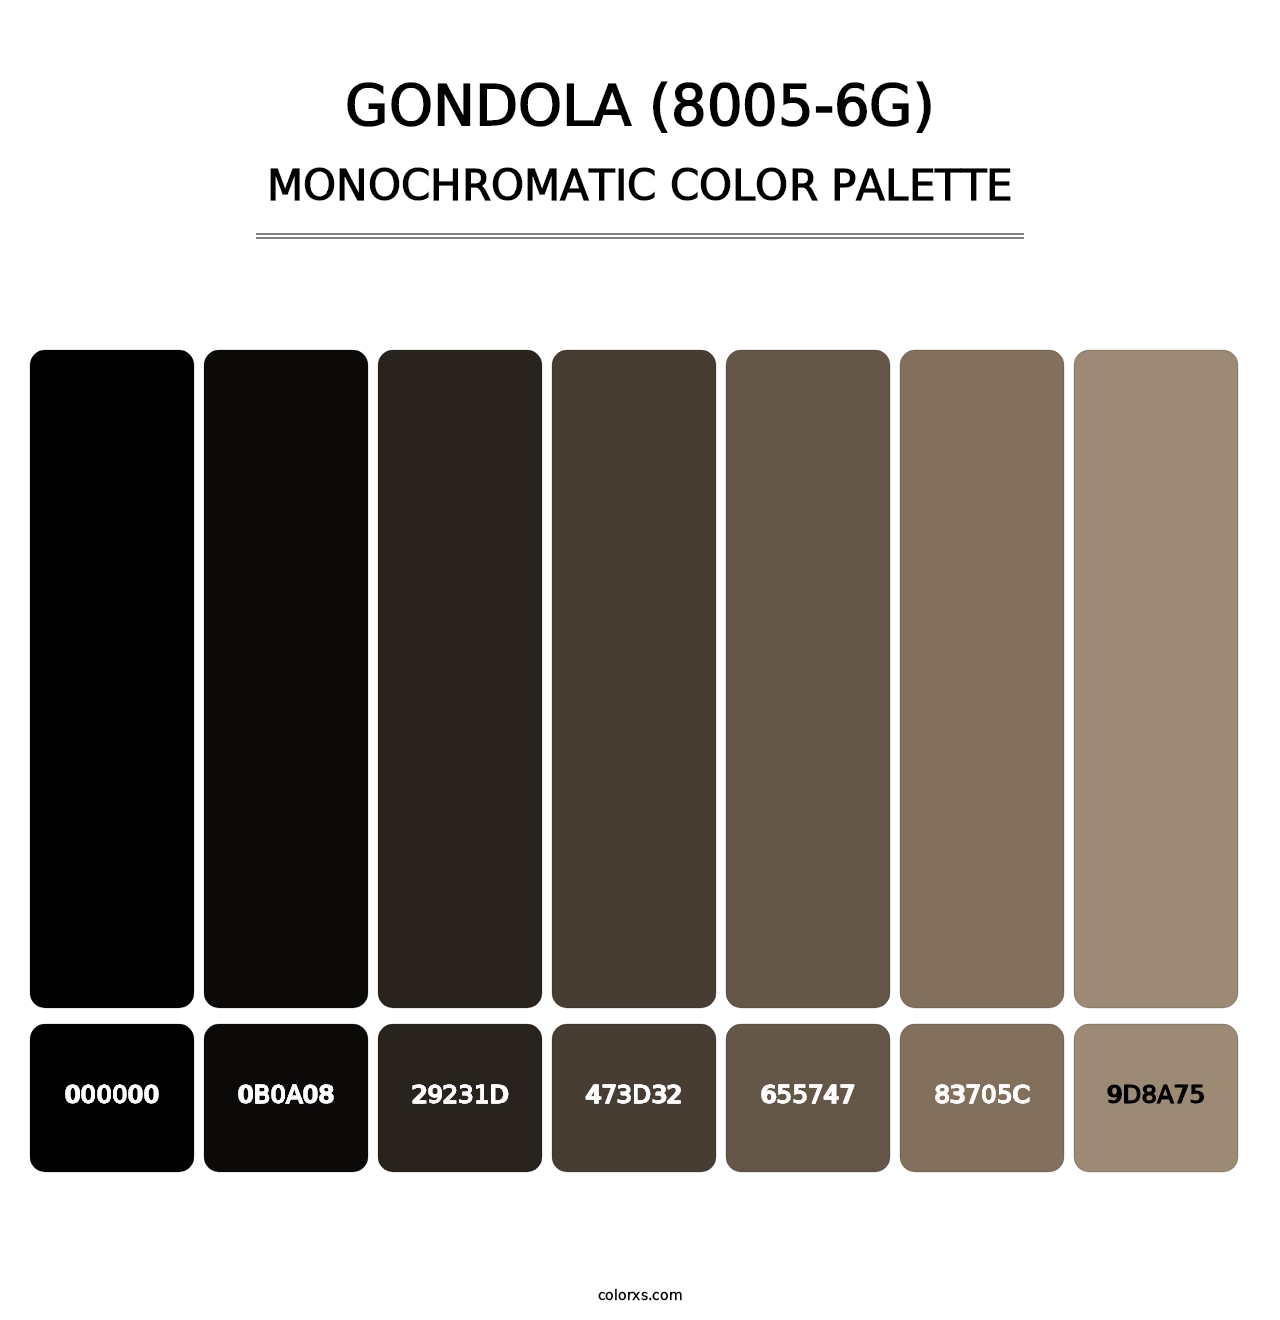 Gondola (8005-6G) - Monochromatic Color Palette